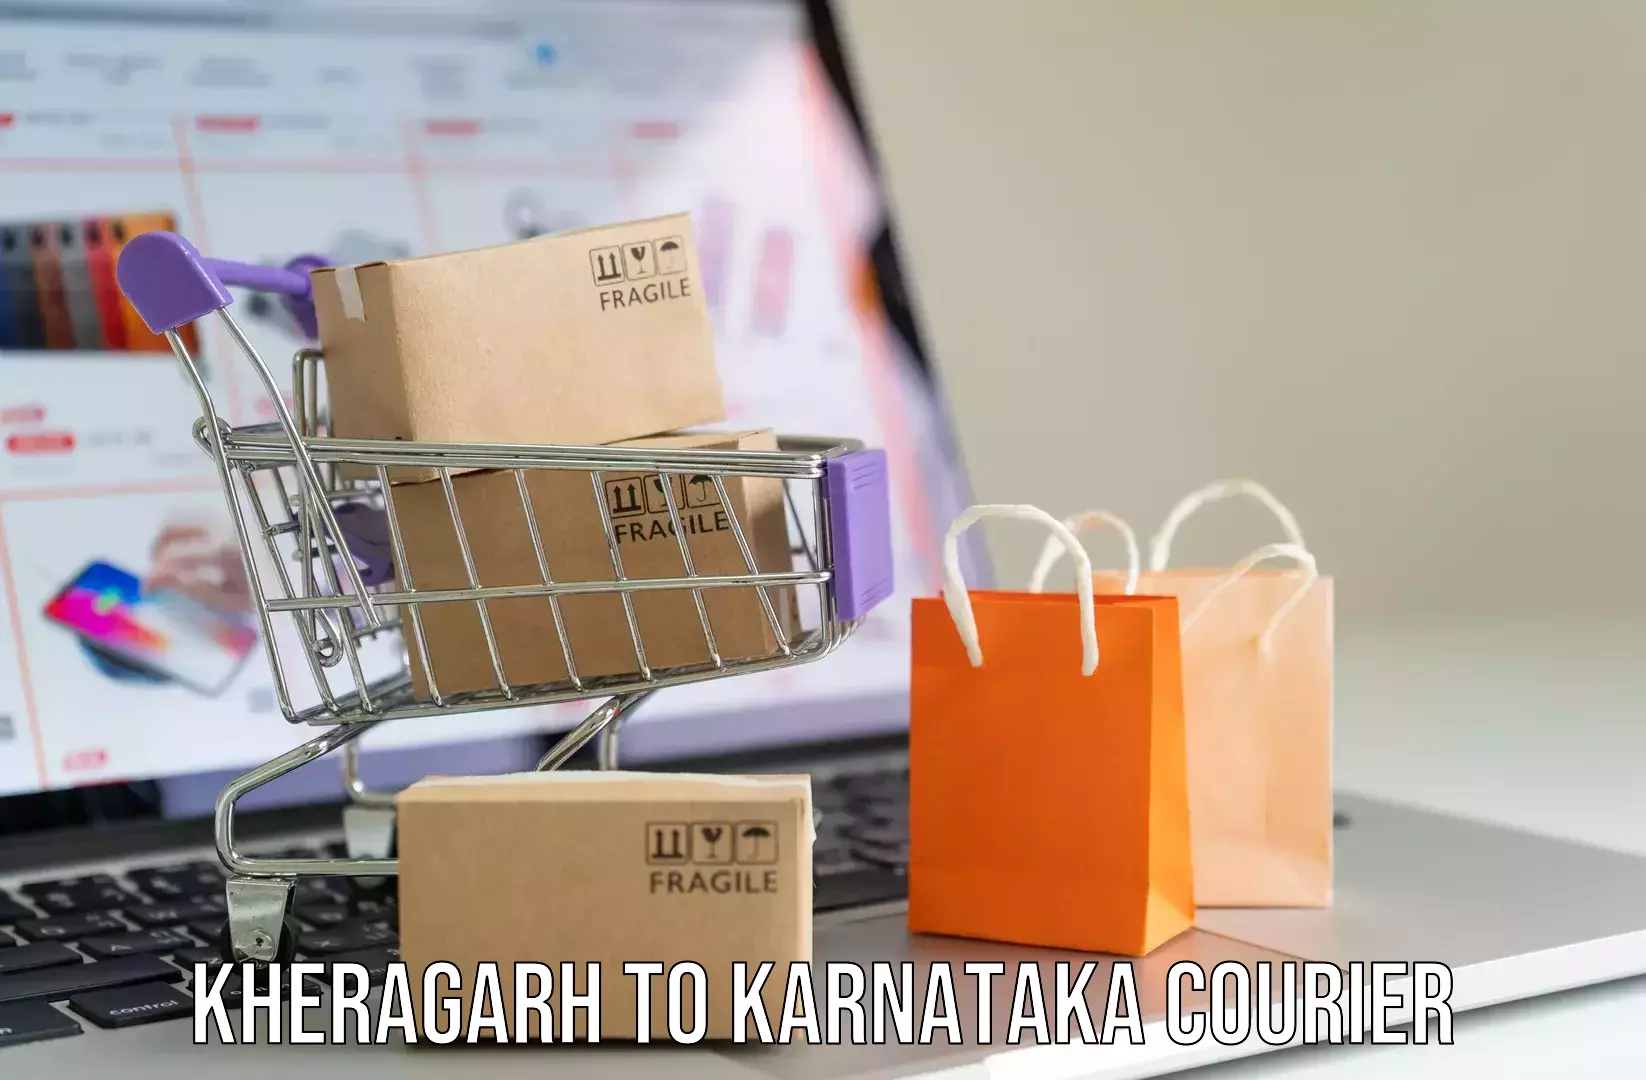 Excess baggage transport Kheragarh to Karnataka